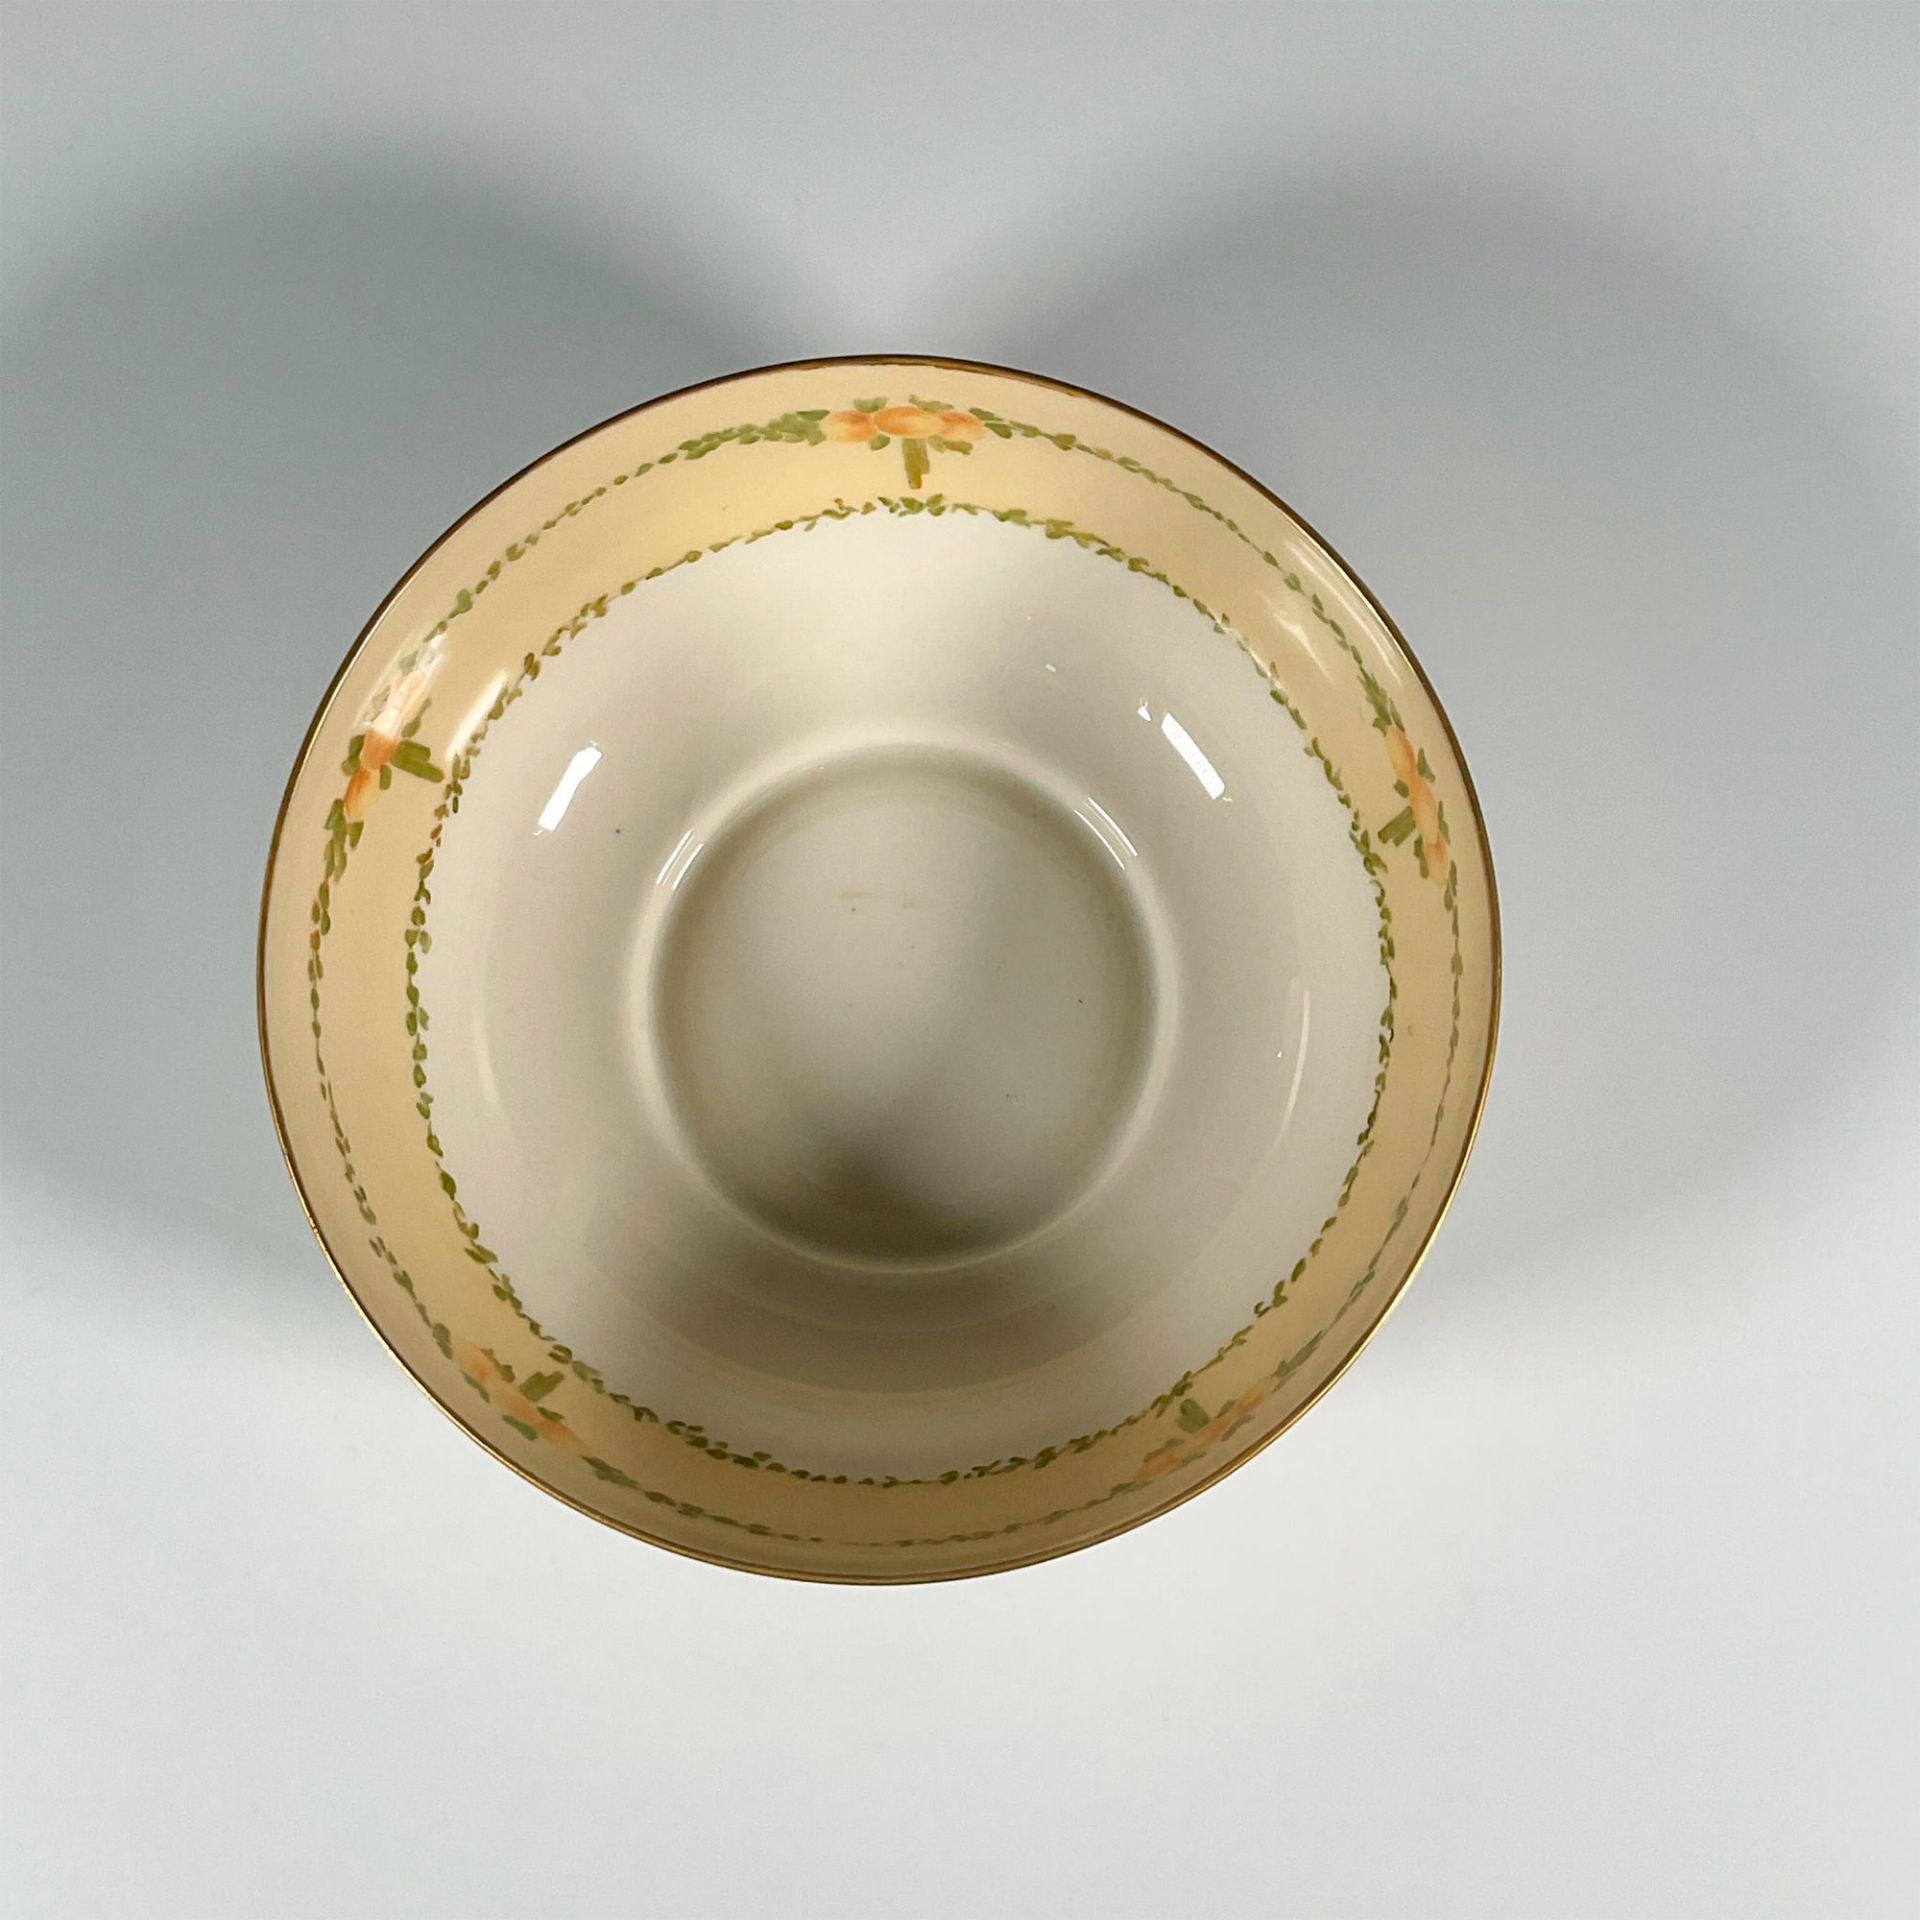 Willets American Belleek Porcelain Bowl - Image 2 of 3